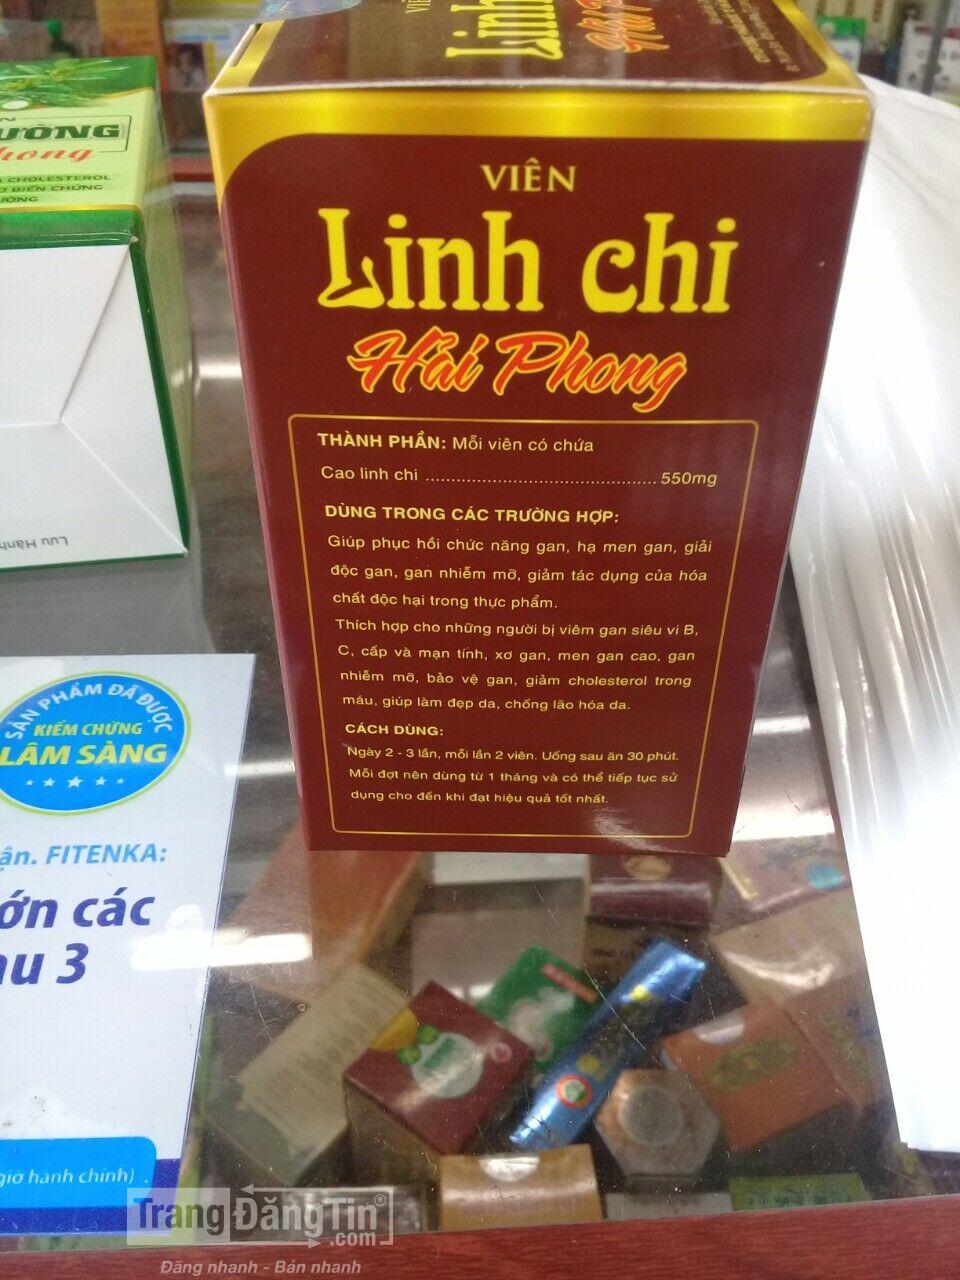 LINH CHI HẢI PHONG